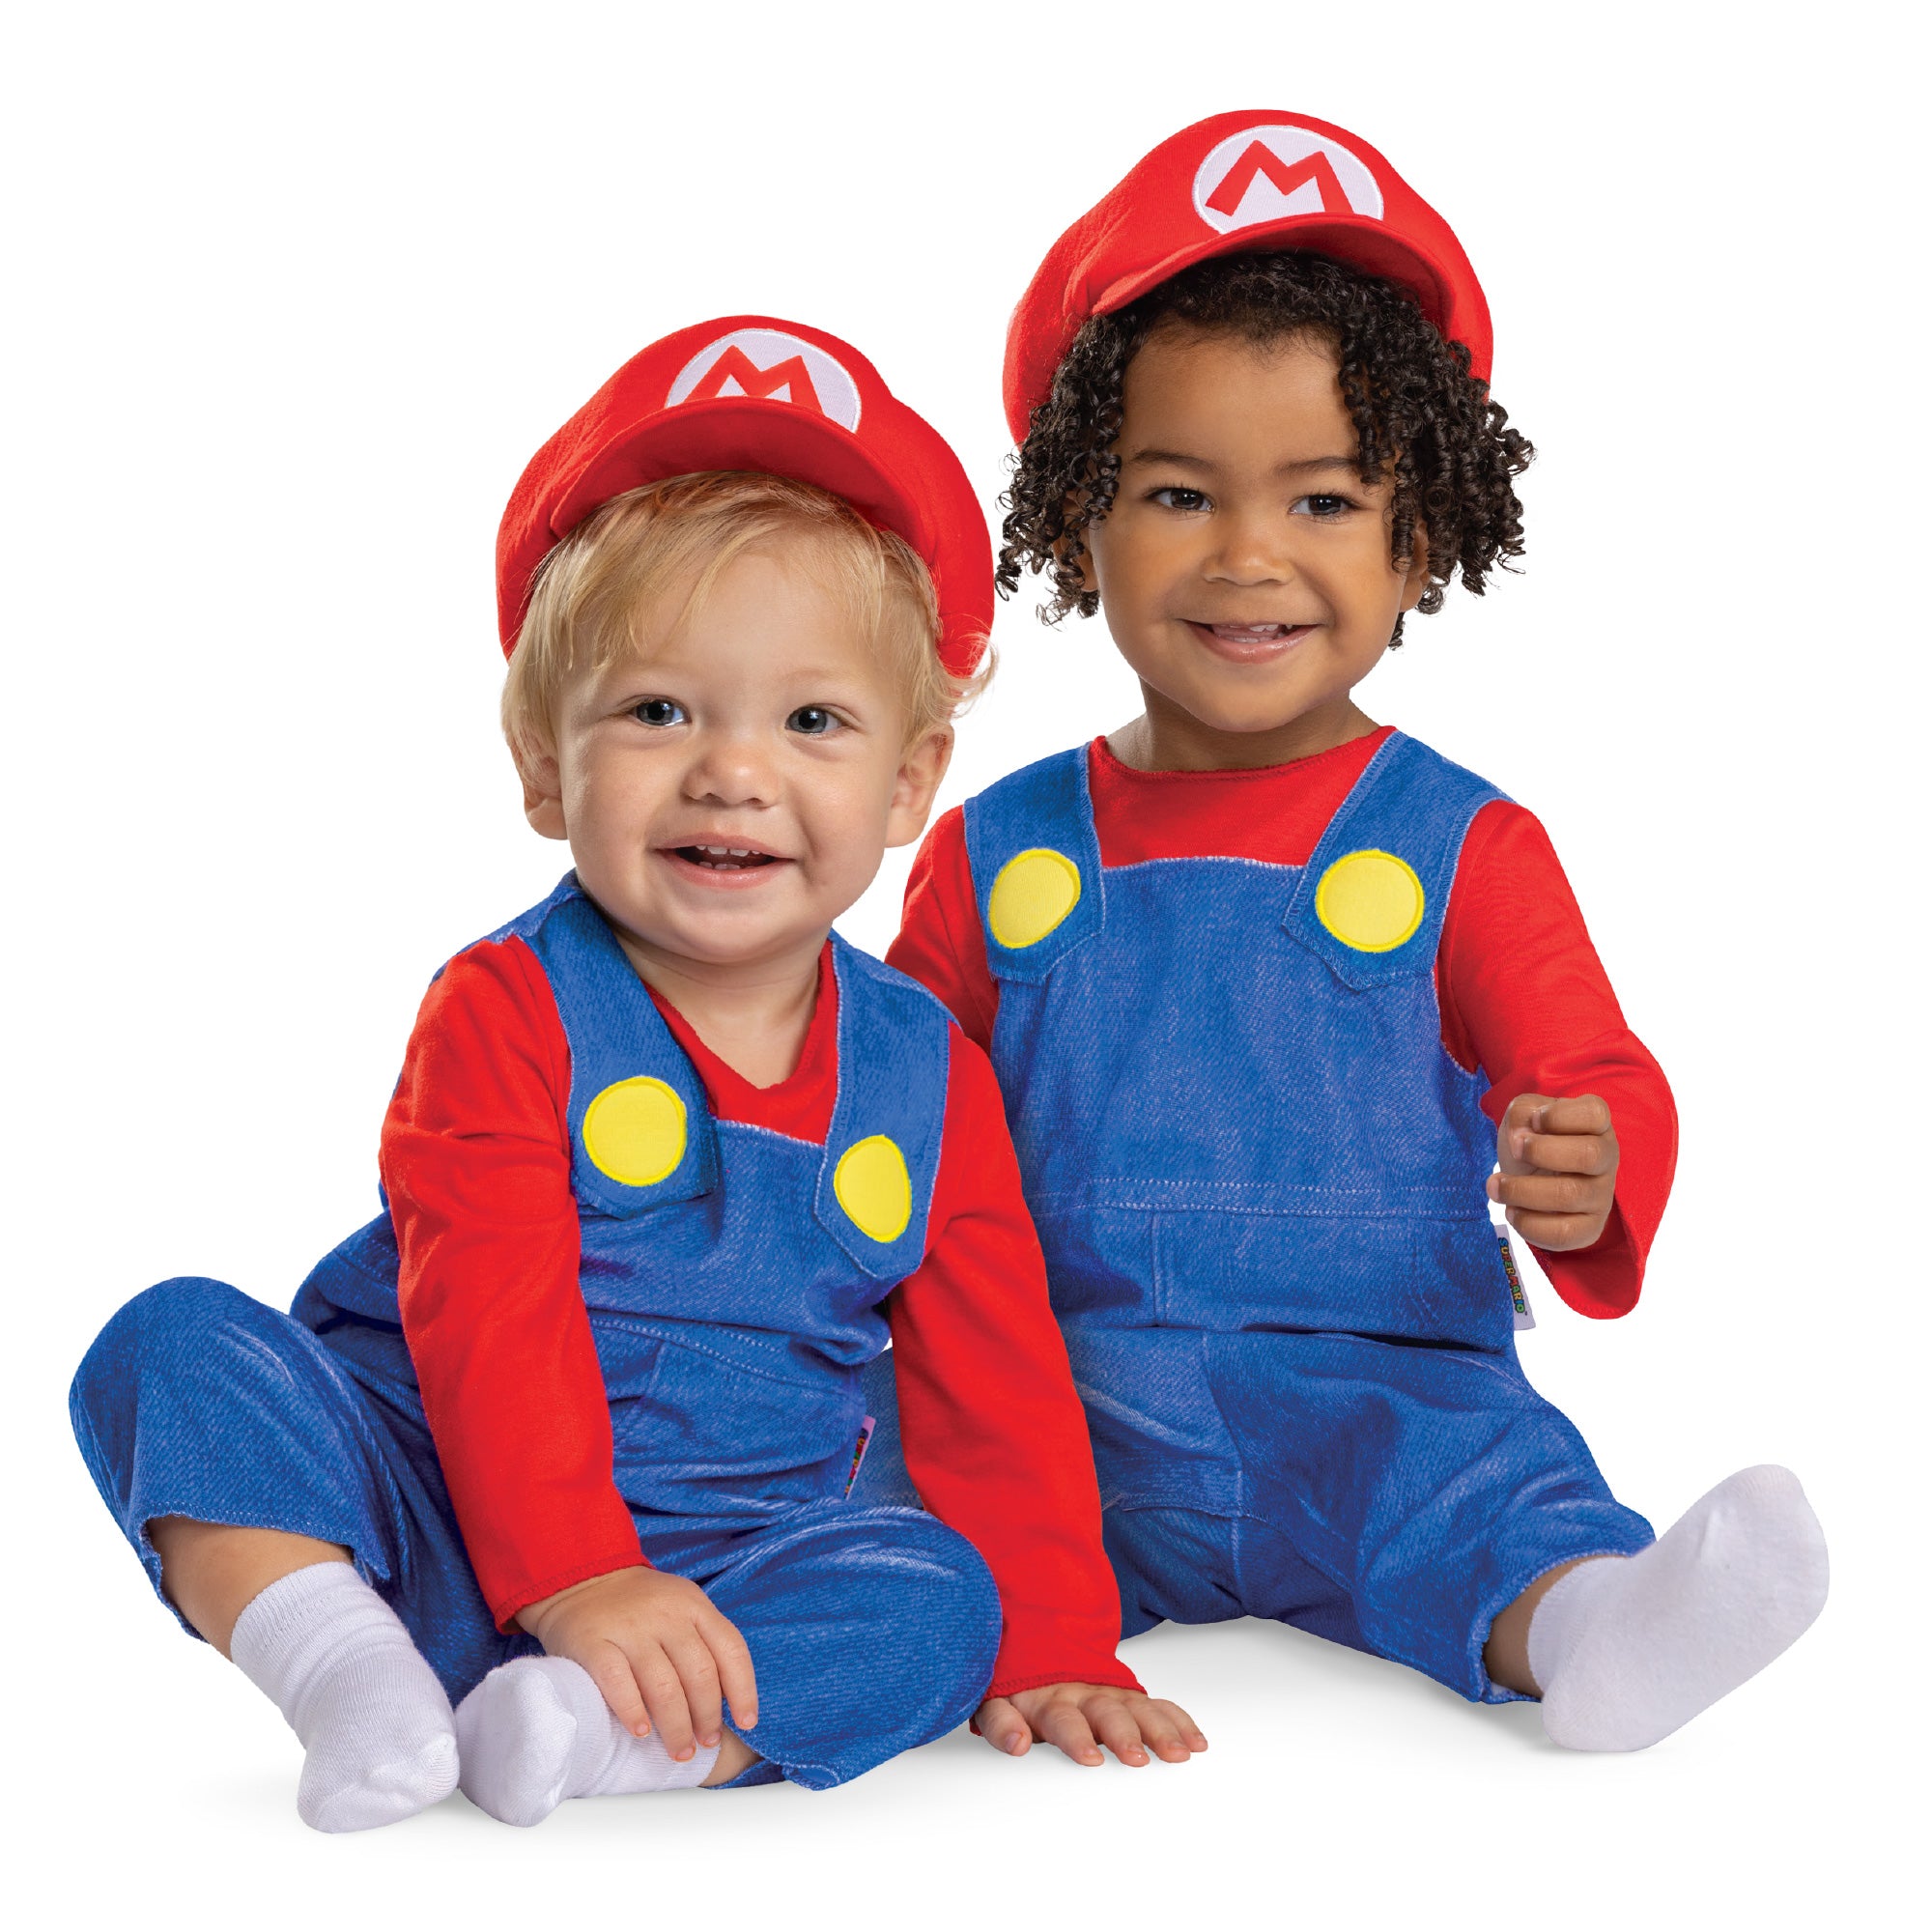 Infant Super Mario Posh Costume